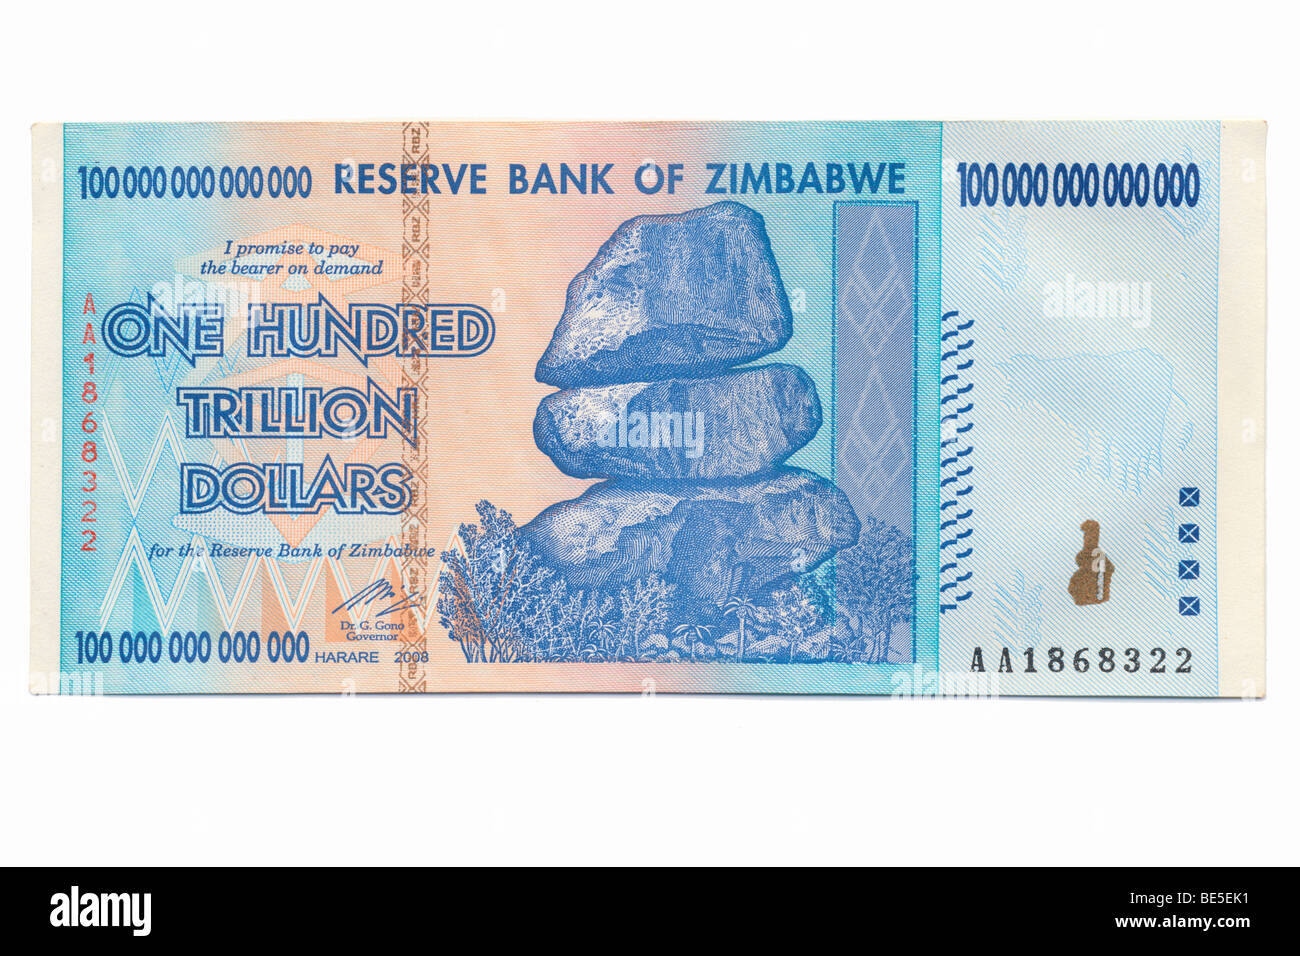 Zimbabwe - One Hundred Trillion Dollar Banknote Stock Photo